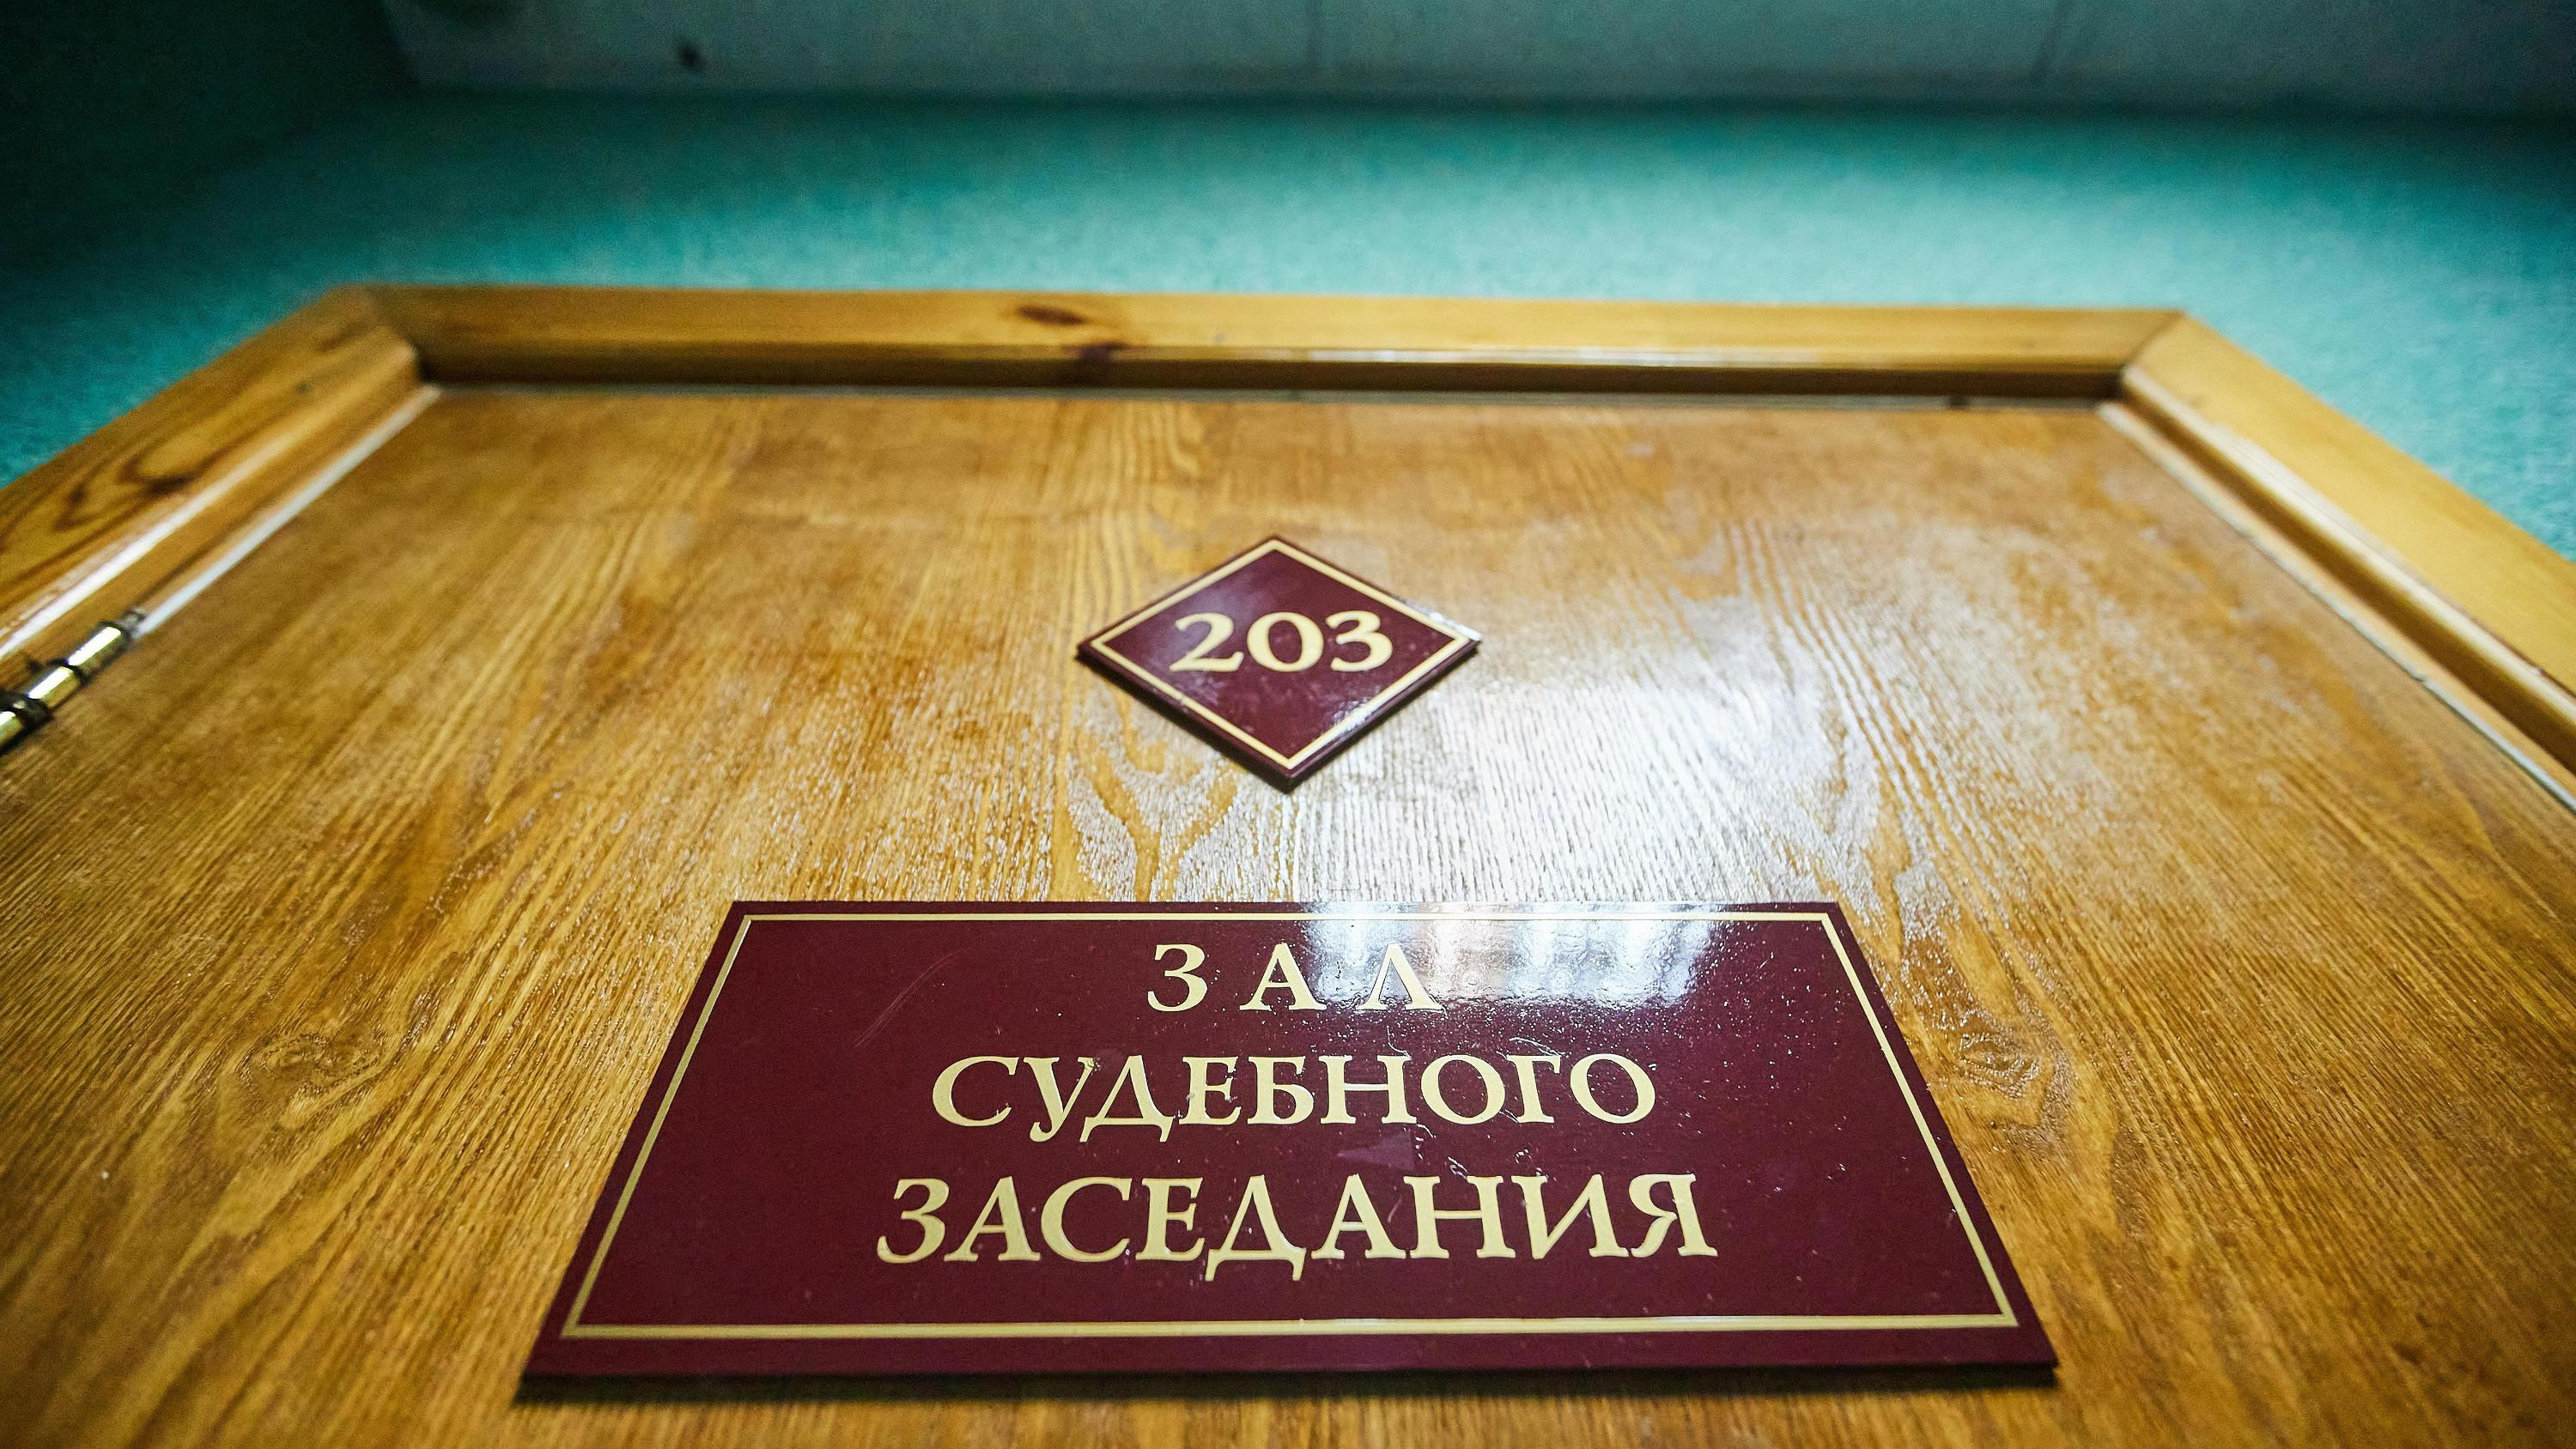 Экс-депутат из Новосибирской области получил срок за смерть знакомого — он не признал вину